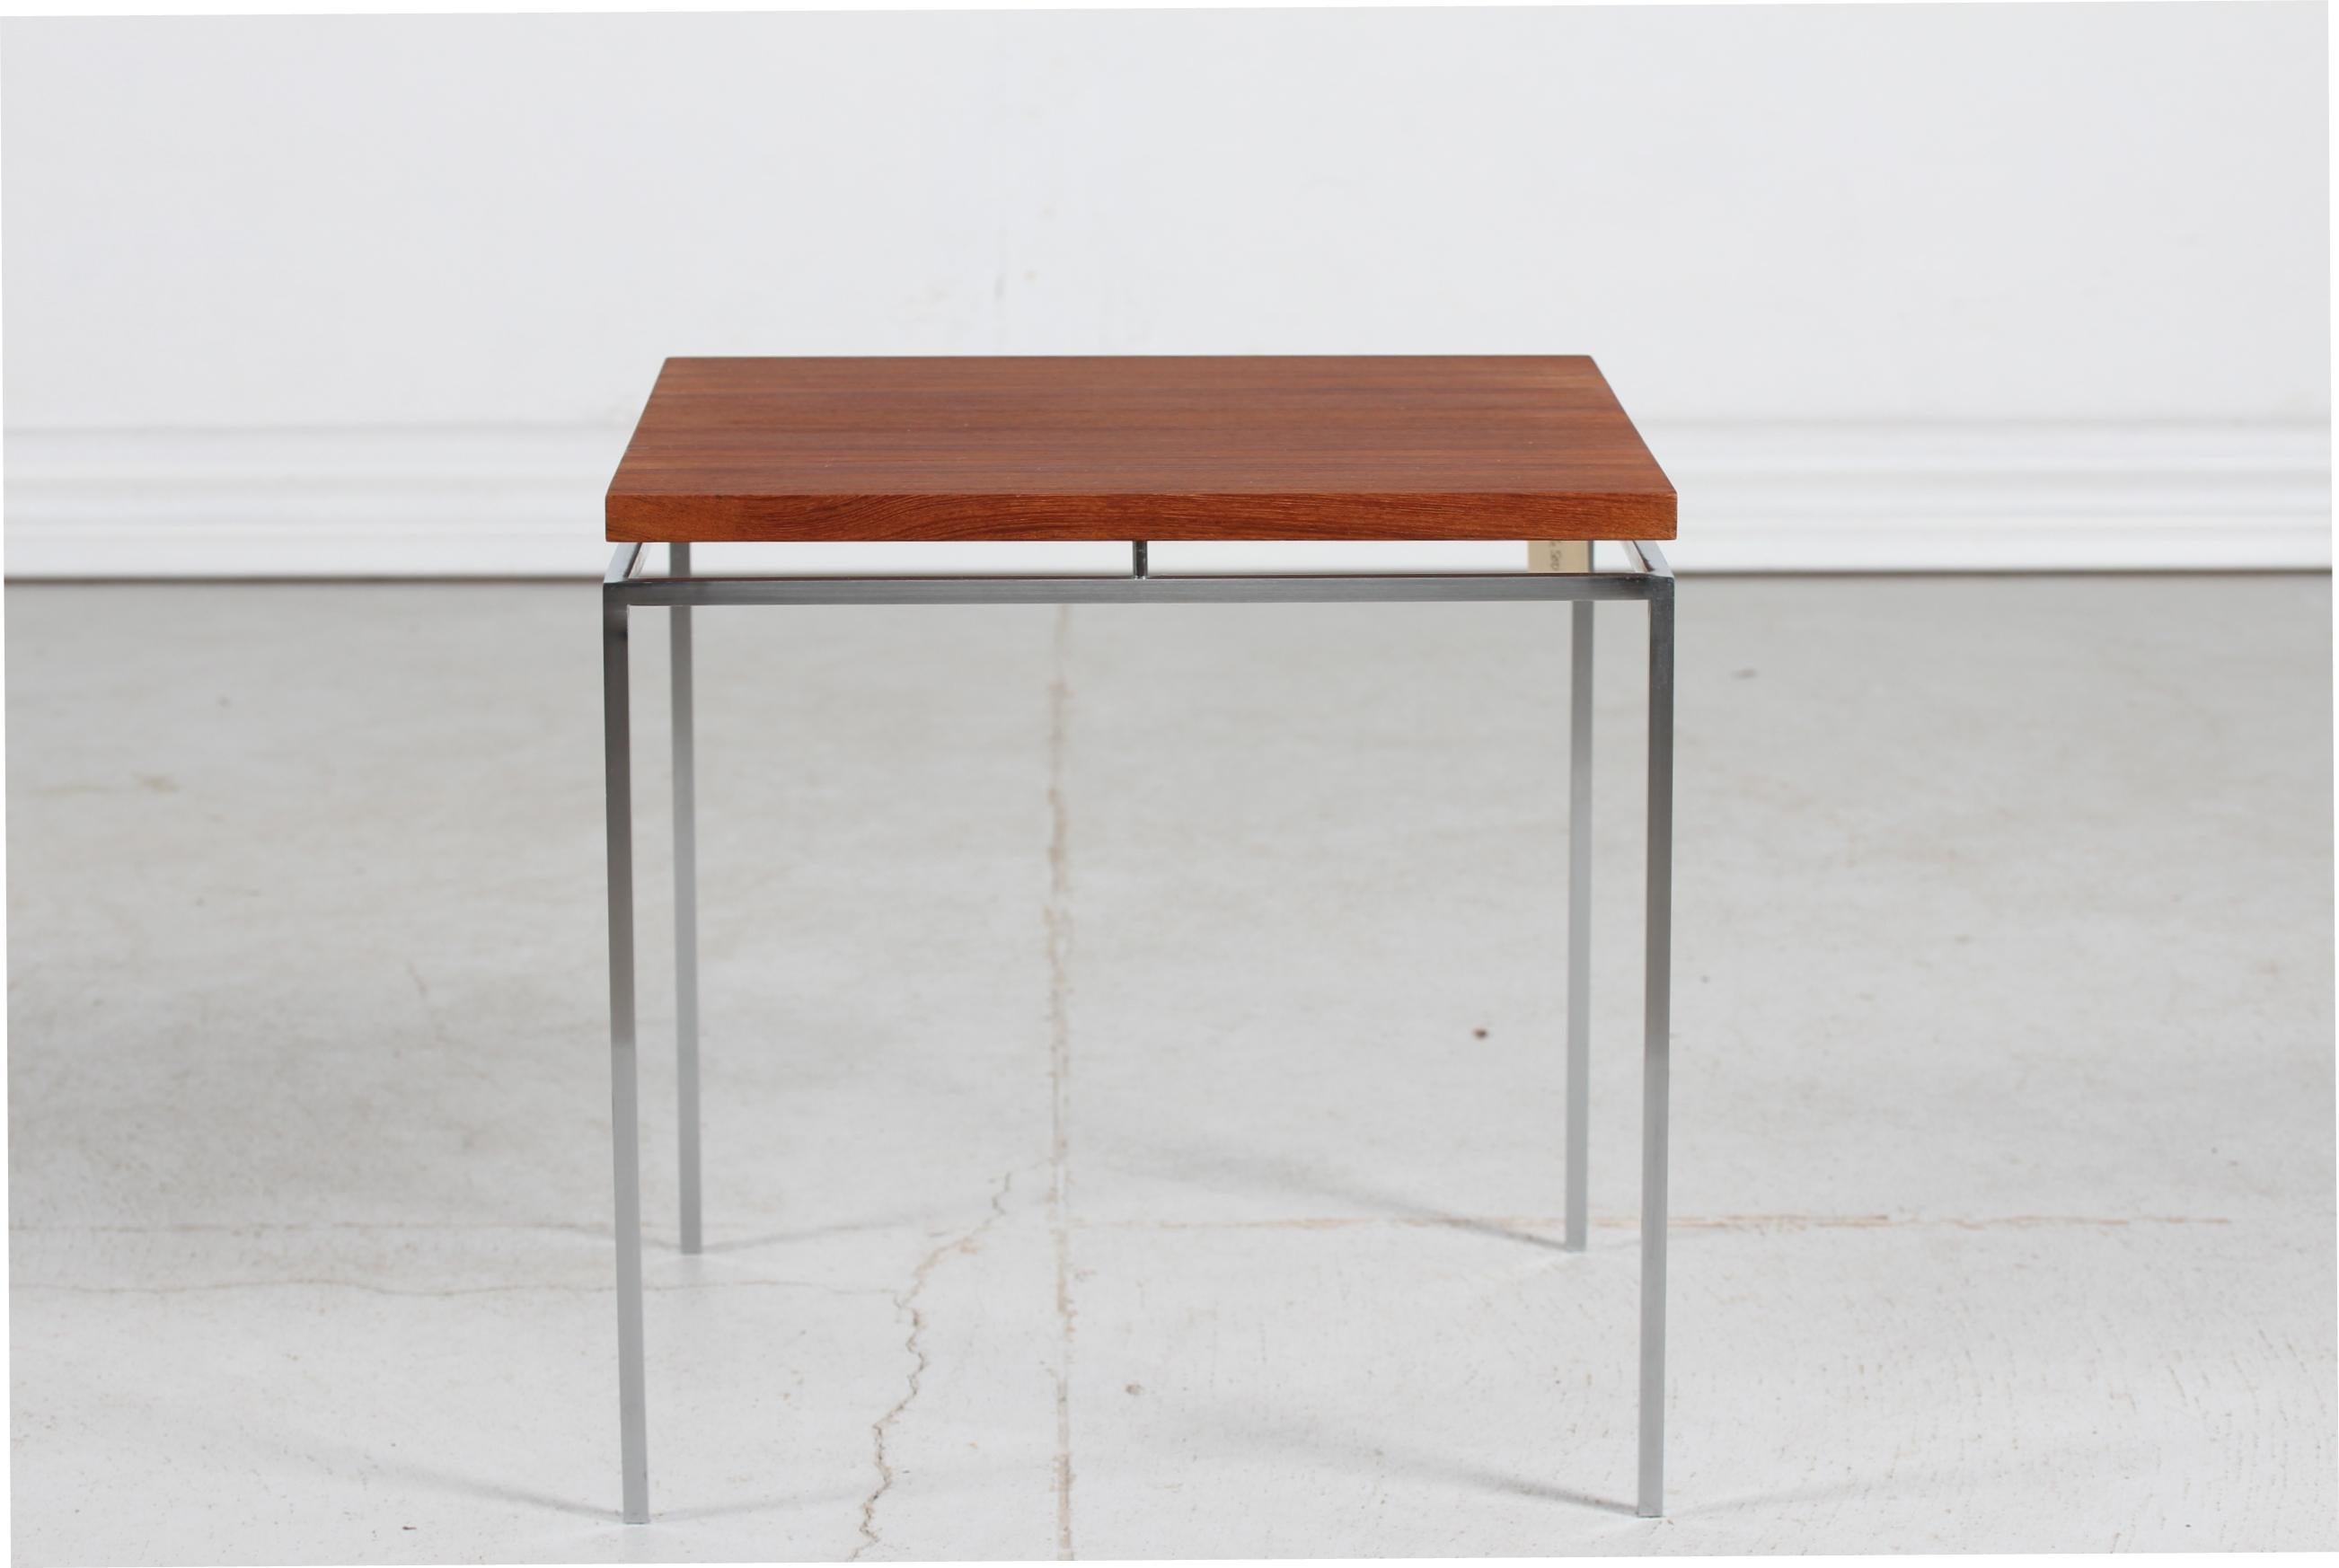 Kleiner Beistelltisch von Knud Joos für Jason Møbler
Der Tisch hat einen Rahmen und Beine aus dünnem Vierkantstahl und eine schwimmende Tischplatte aus Teakholzfurnier.

Schöner Vintage-Zustand.
 